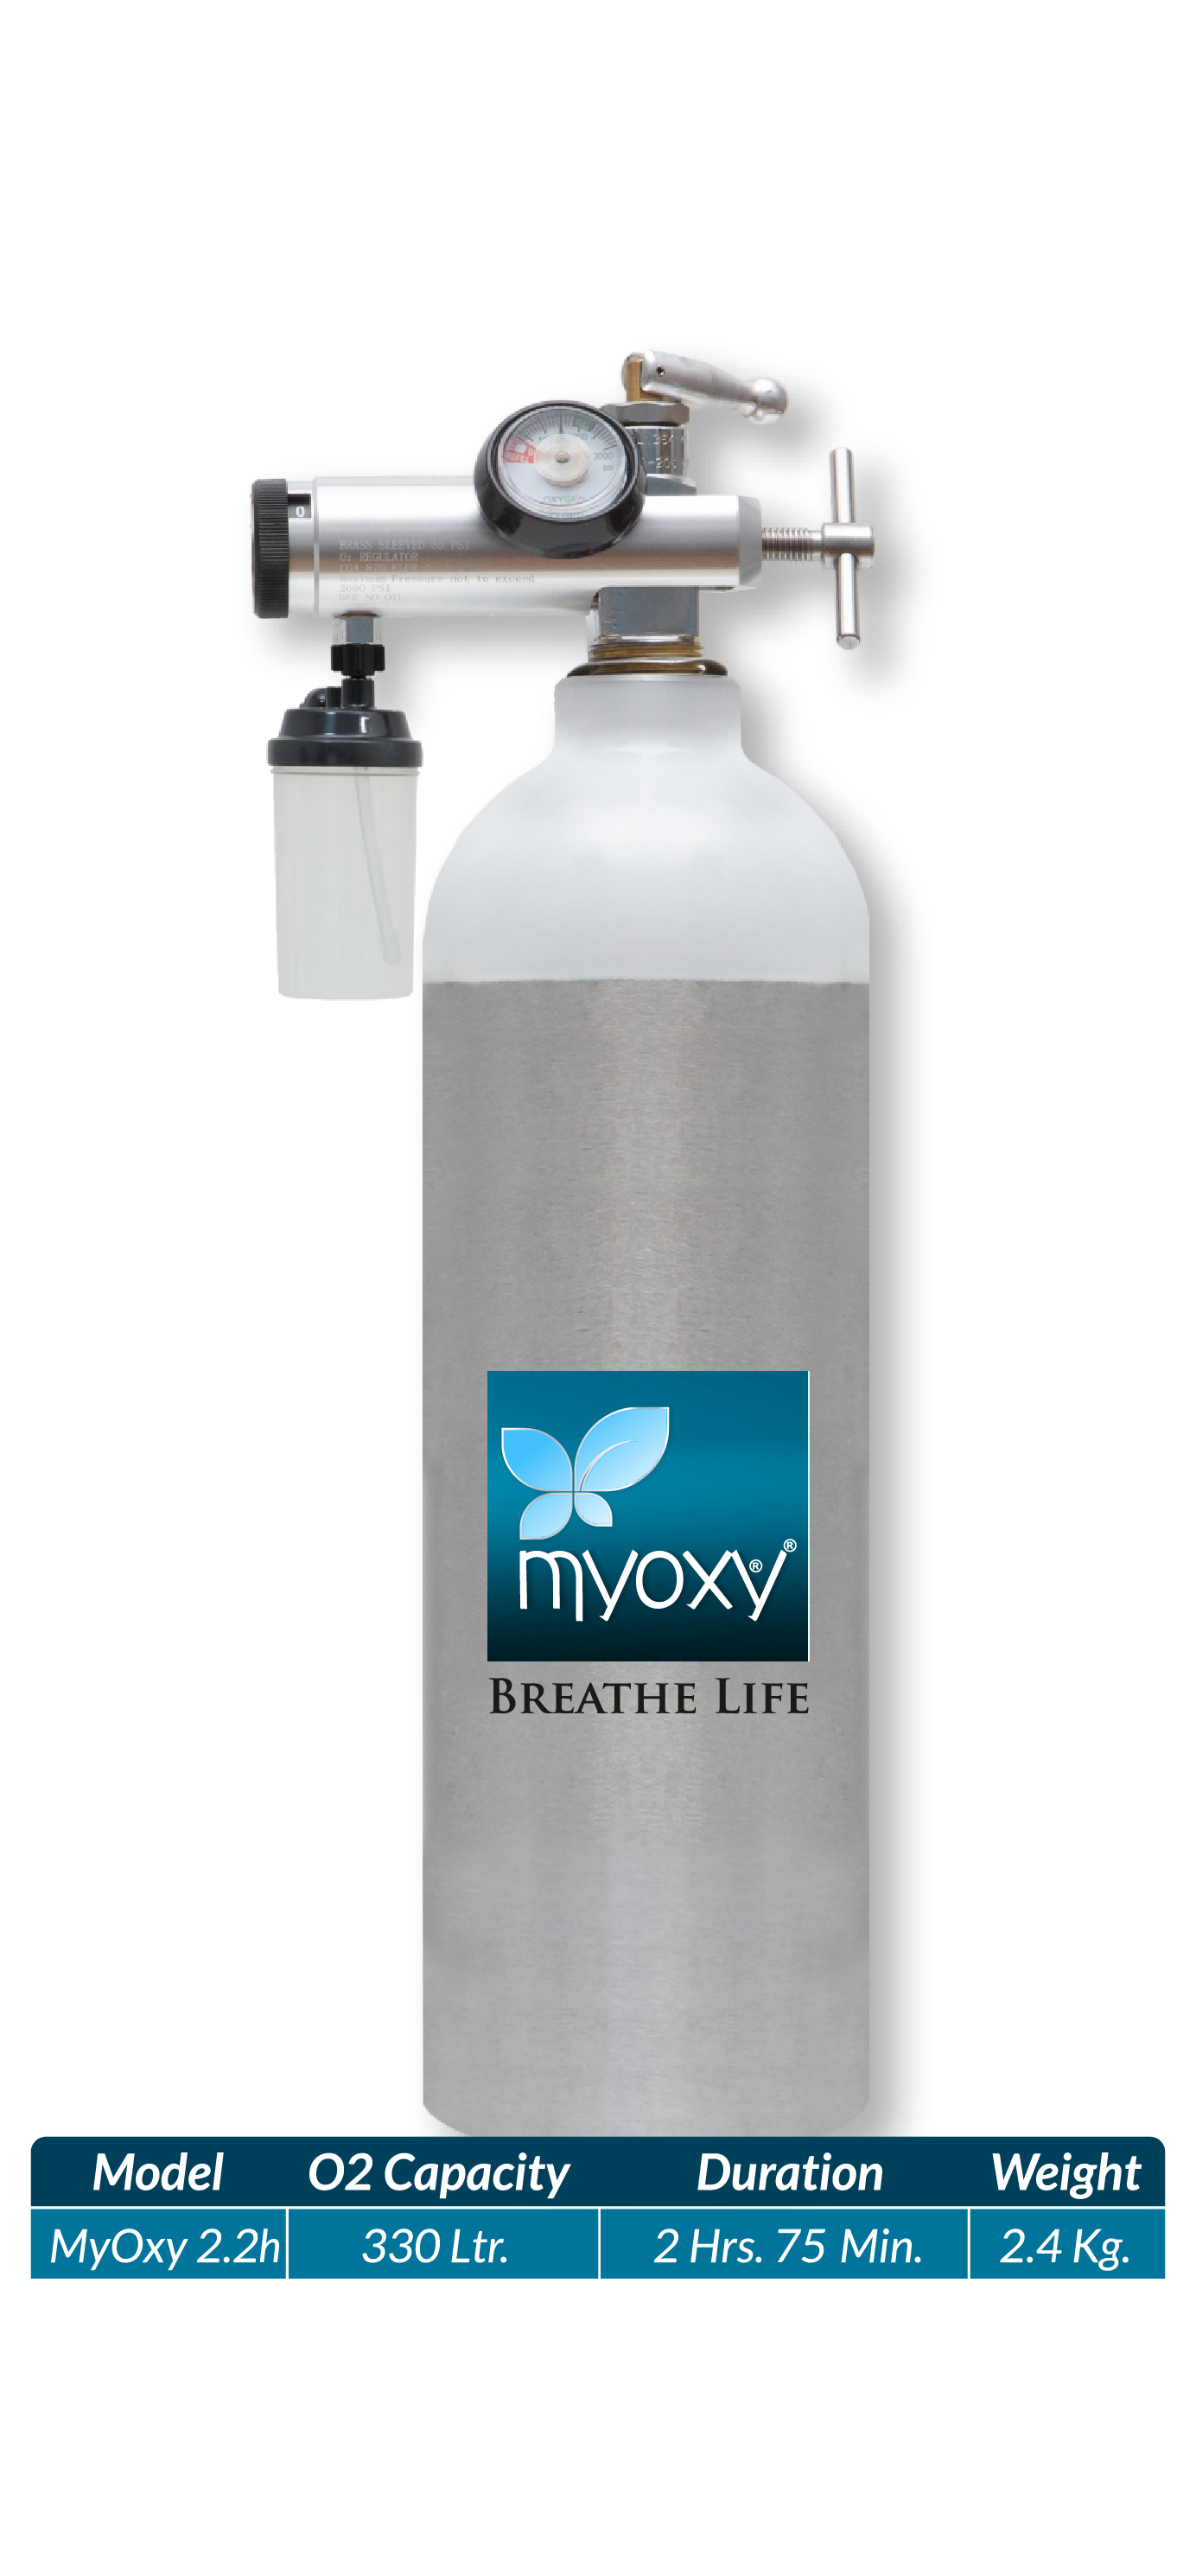 MyOxy portable oxygen kit MyOxy 2.2h